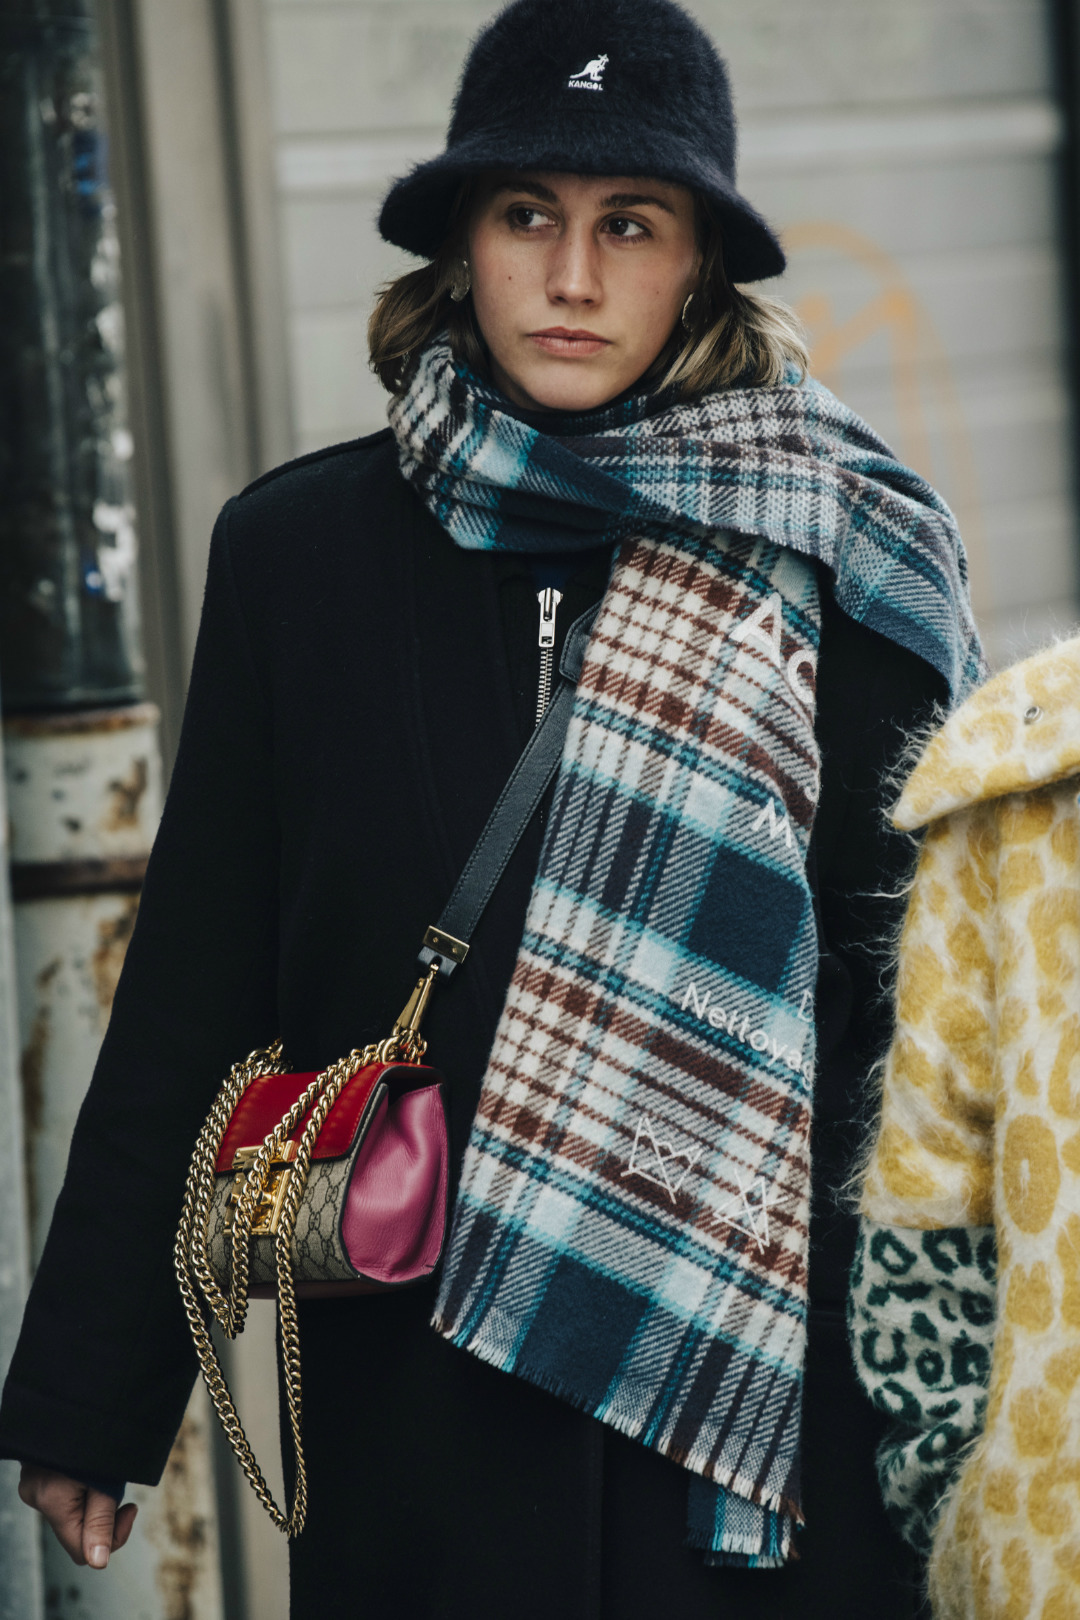 Sokak Stili: 2019-20 Sonbahar/Kış Stockholm Moda Haftası 3. Gün